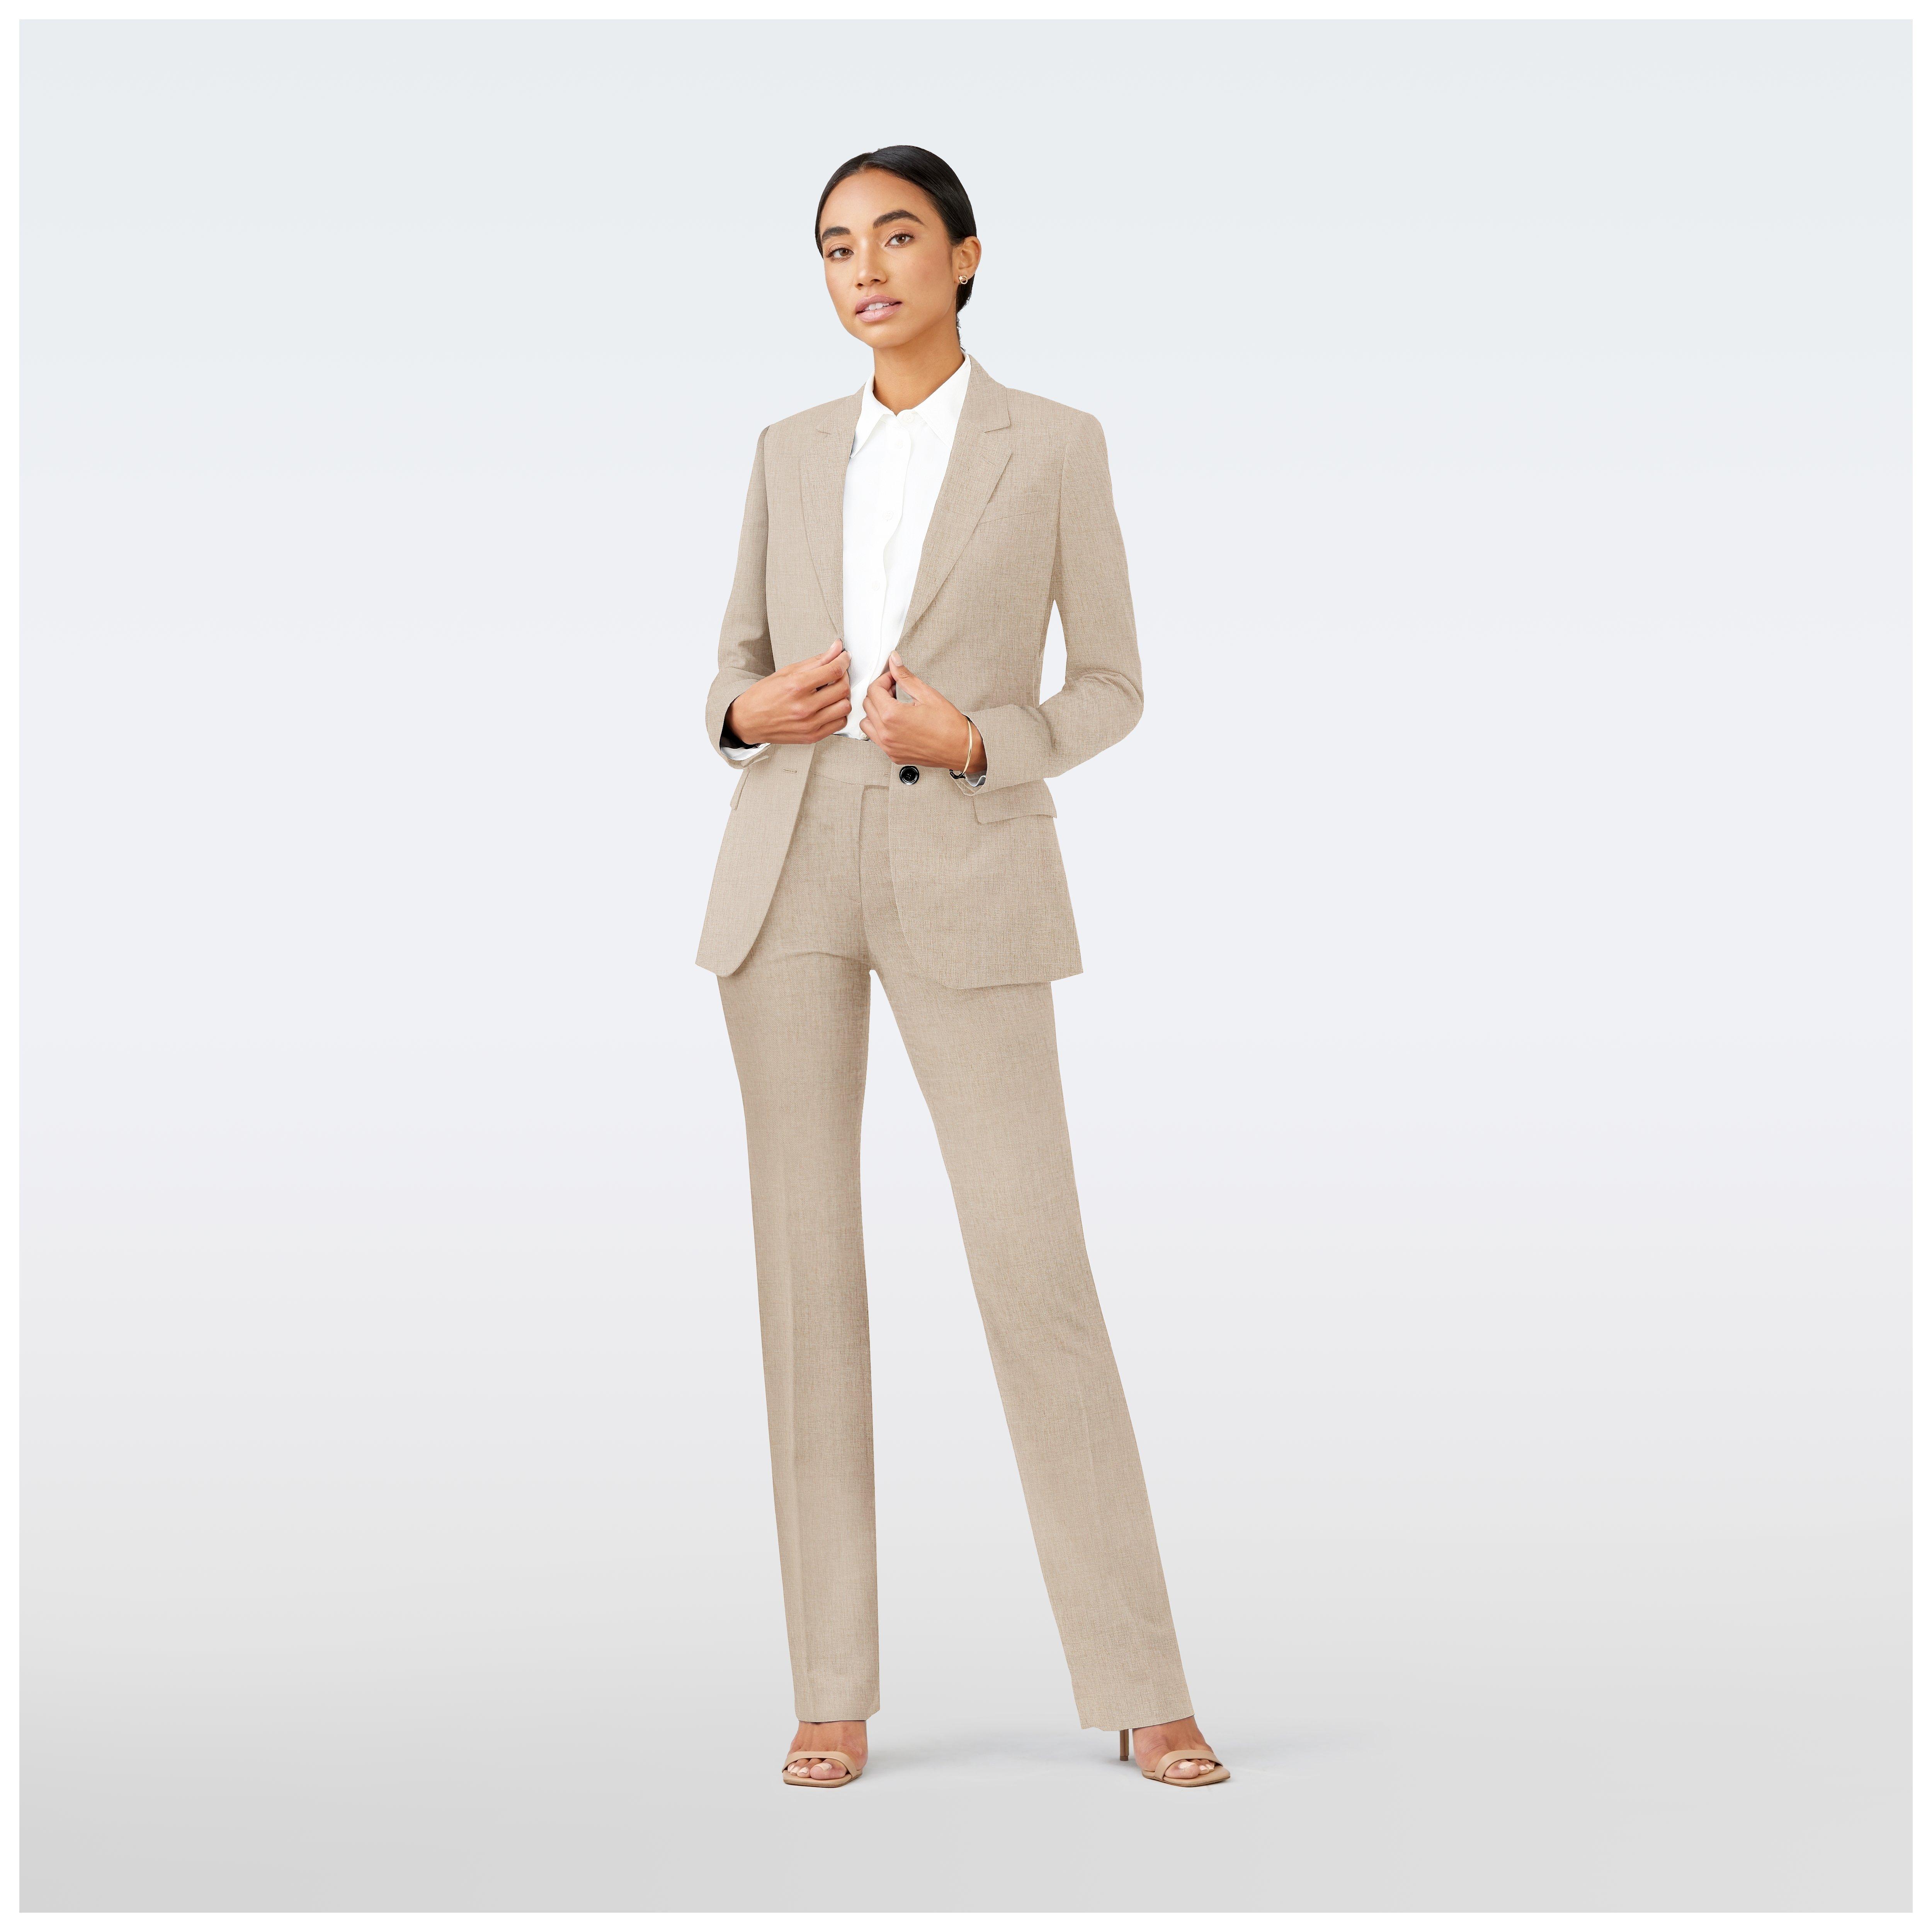 Buy Women Two Piece Suit,office Suit, Prom Suit,pants Suit Set, Elegant Suit,classic  Suit ,business Suit,wide-legged Suit,wedding Suit,pink Suit Online in India  - Etsy